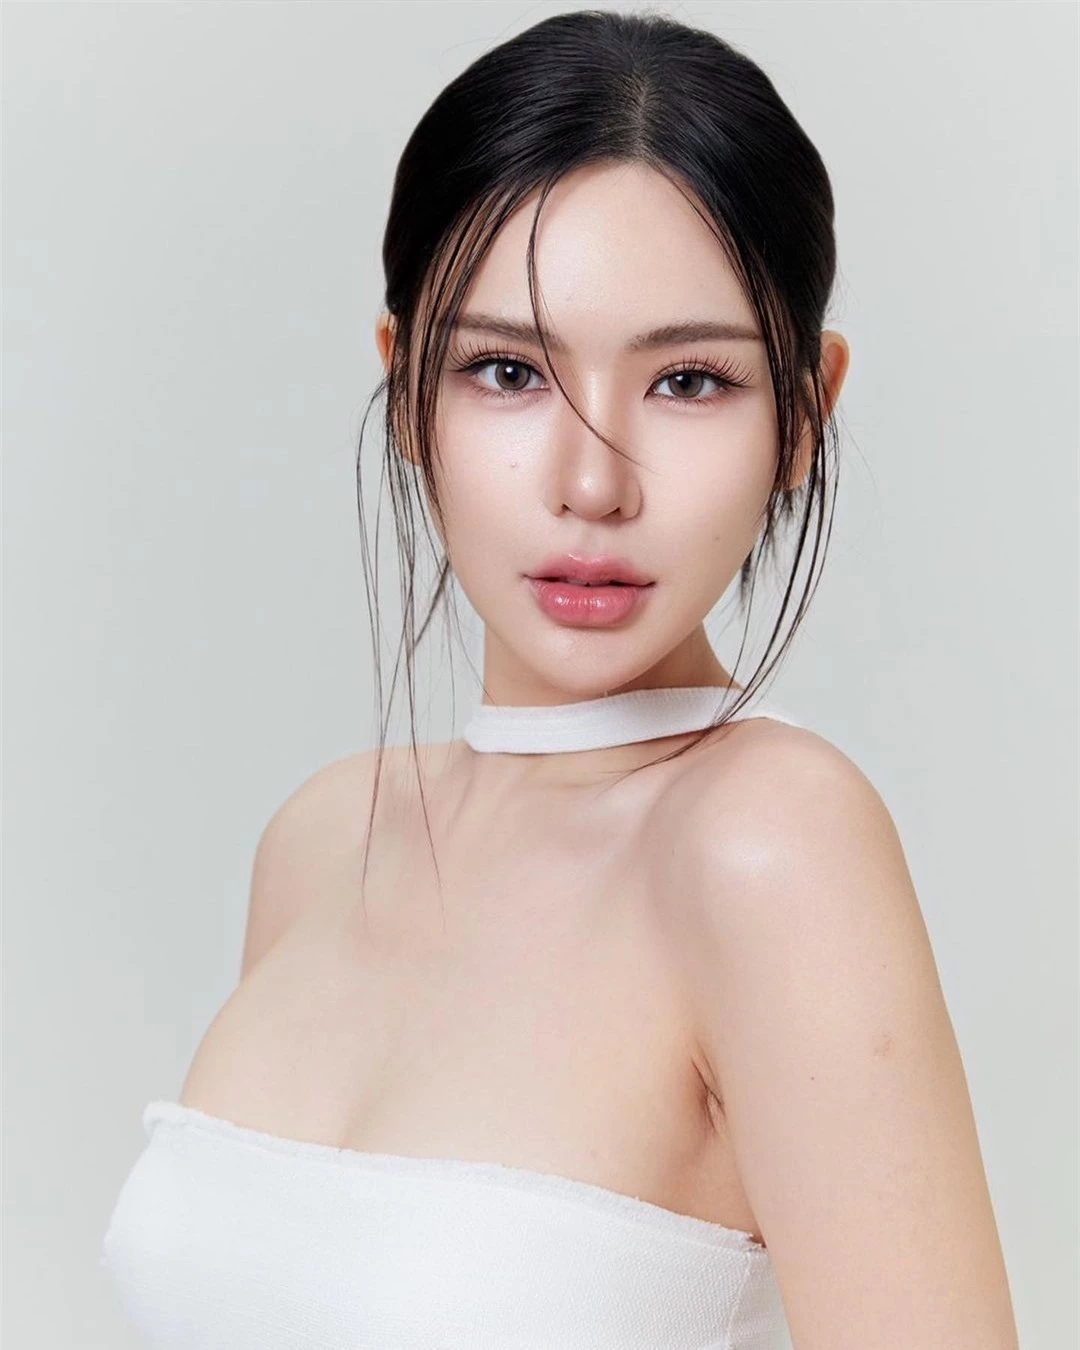 Nhan sắc nóng bỏng của người đẹp lai đăng quang Hoa hậu Hòa bình Phuket ảnh 4